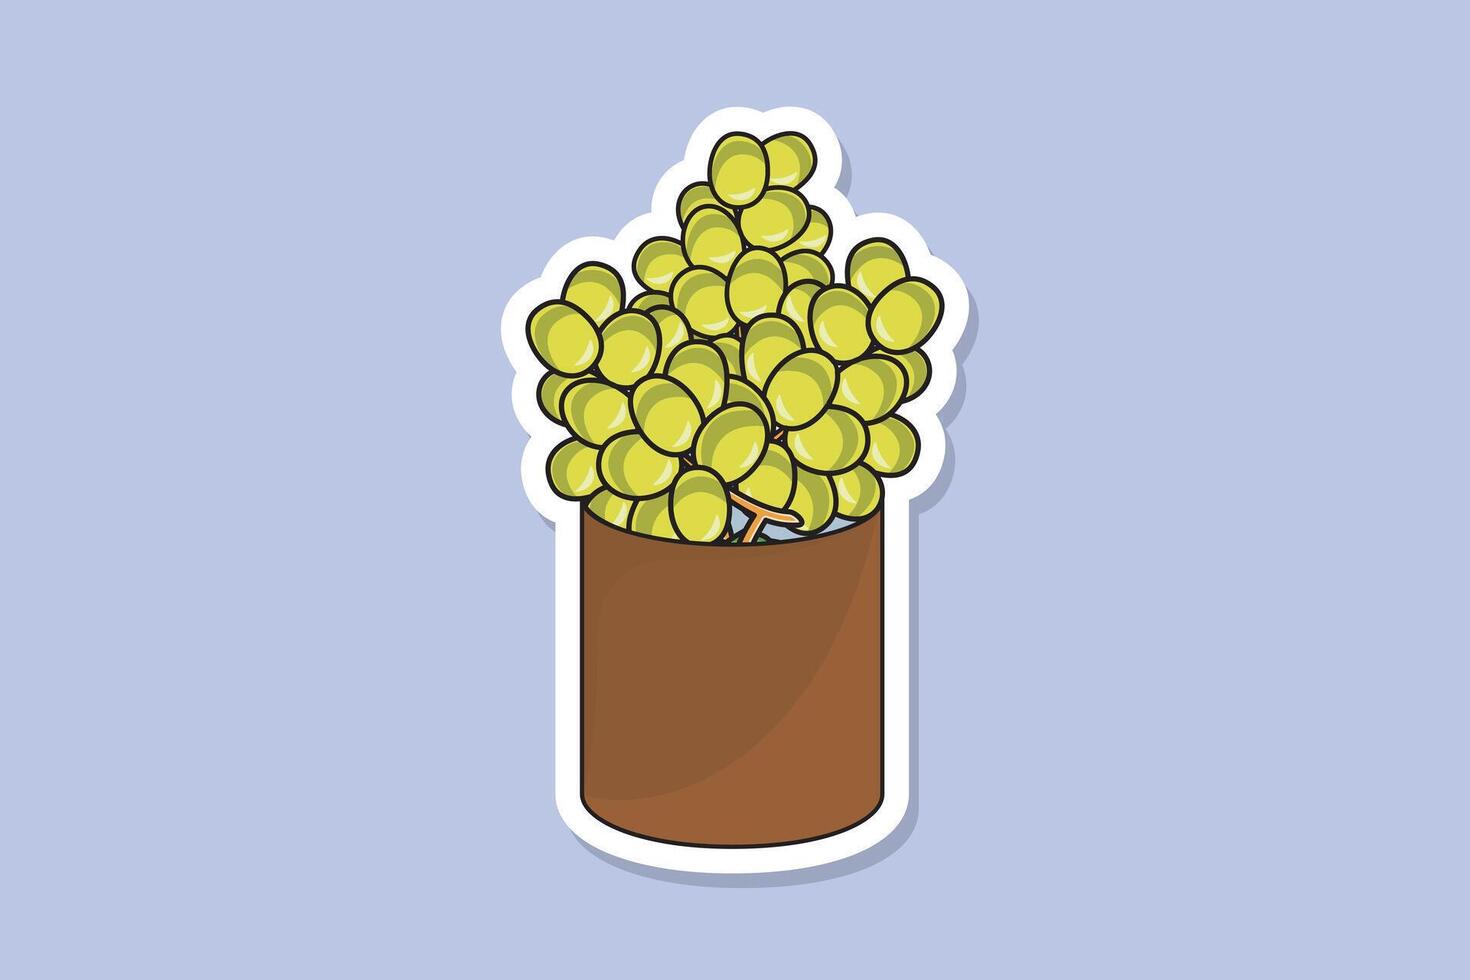 groen druiven in metaal Open blik kan sticker ontwerp vector illustratie. voedsel en drinken voorwerpen icoon concept. groen druiven sticker ontwerp logo pictogrammen.